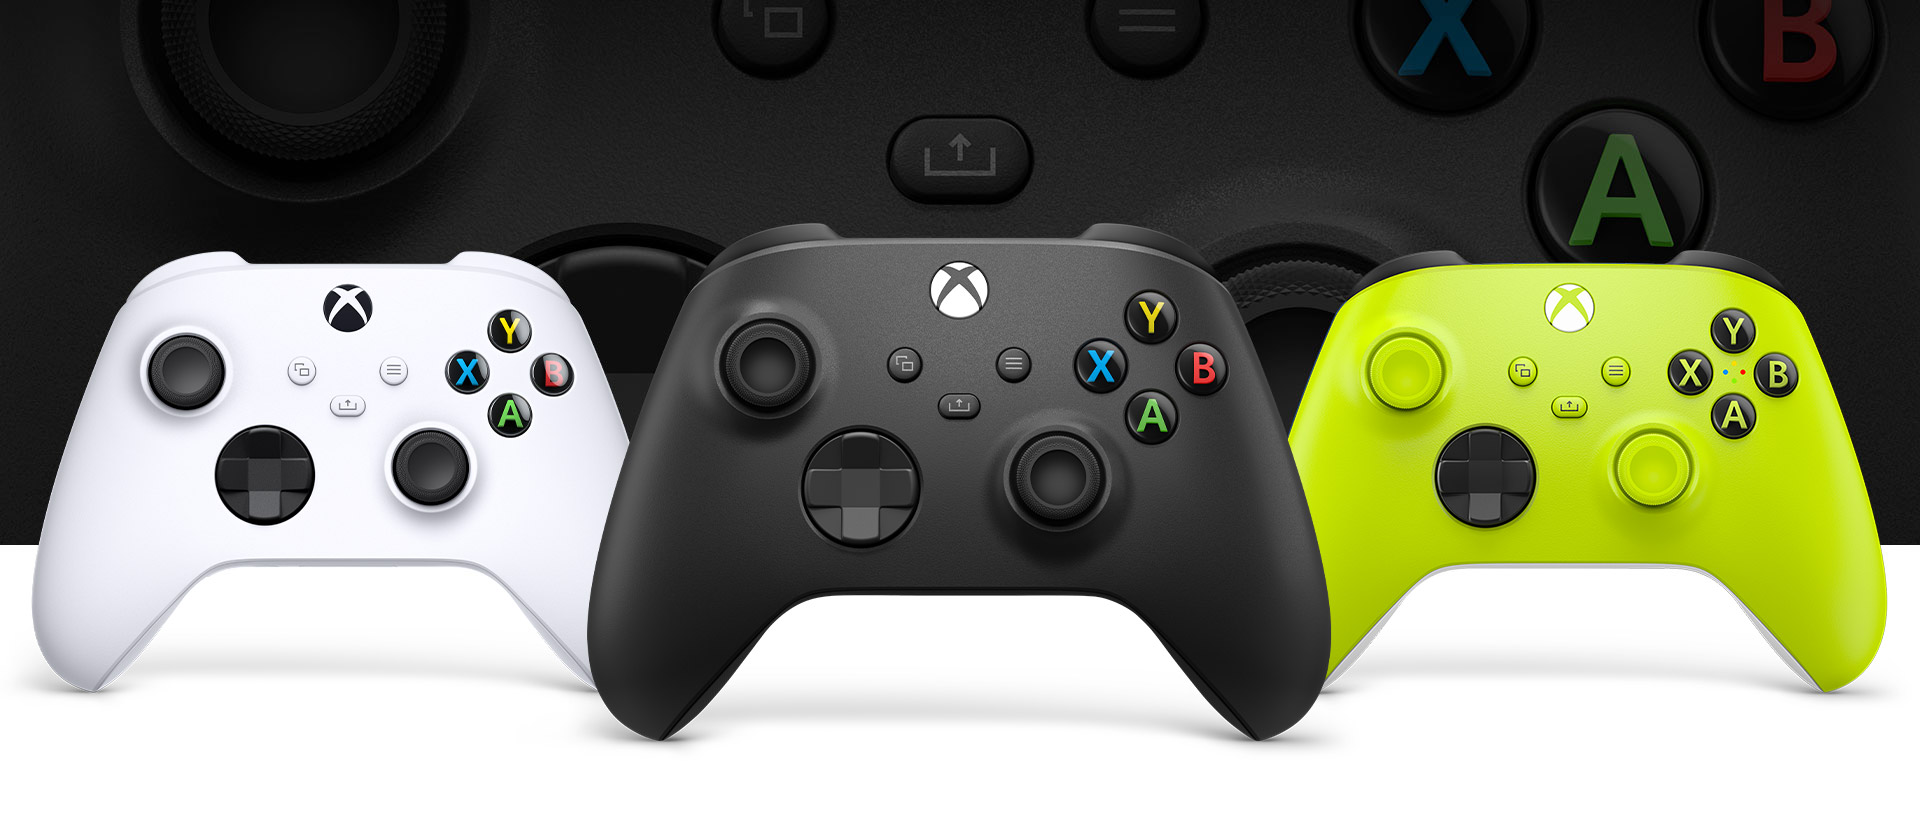 Χειριστήριο Xbox σε Carbon Black μπροστά με τα χειριστήρια σε robot white και Electric Volt δίπλα του